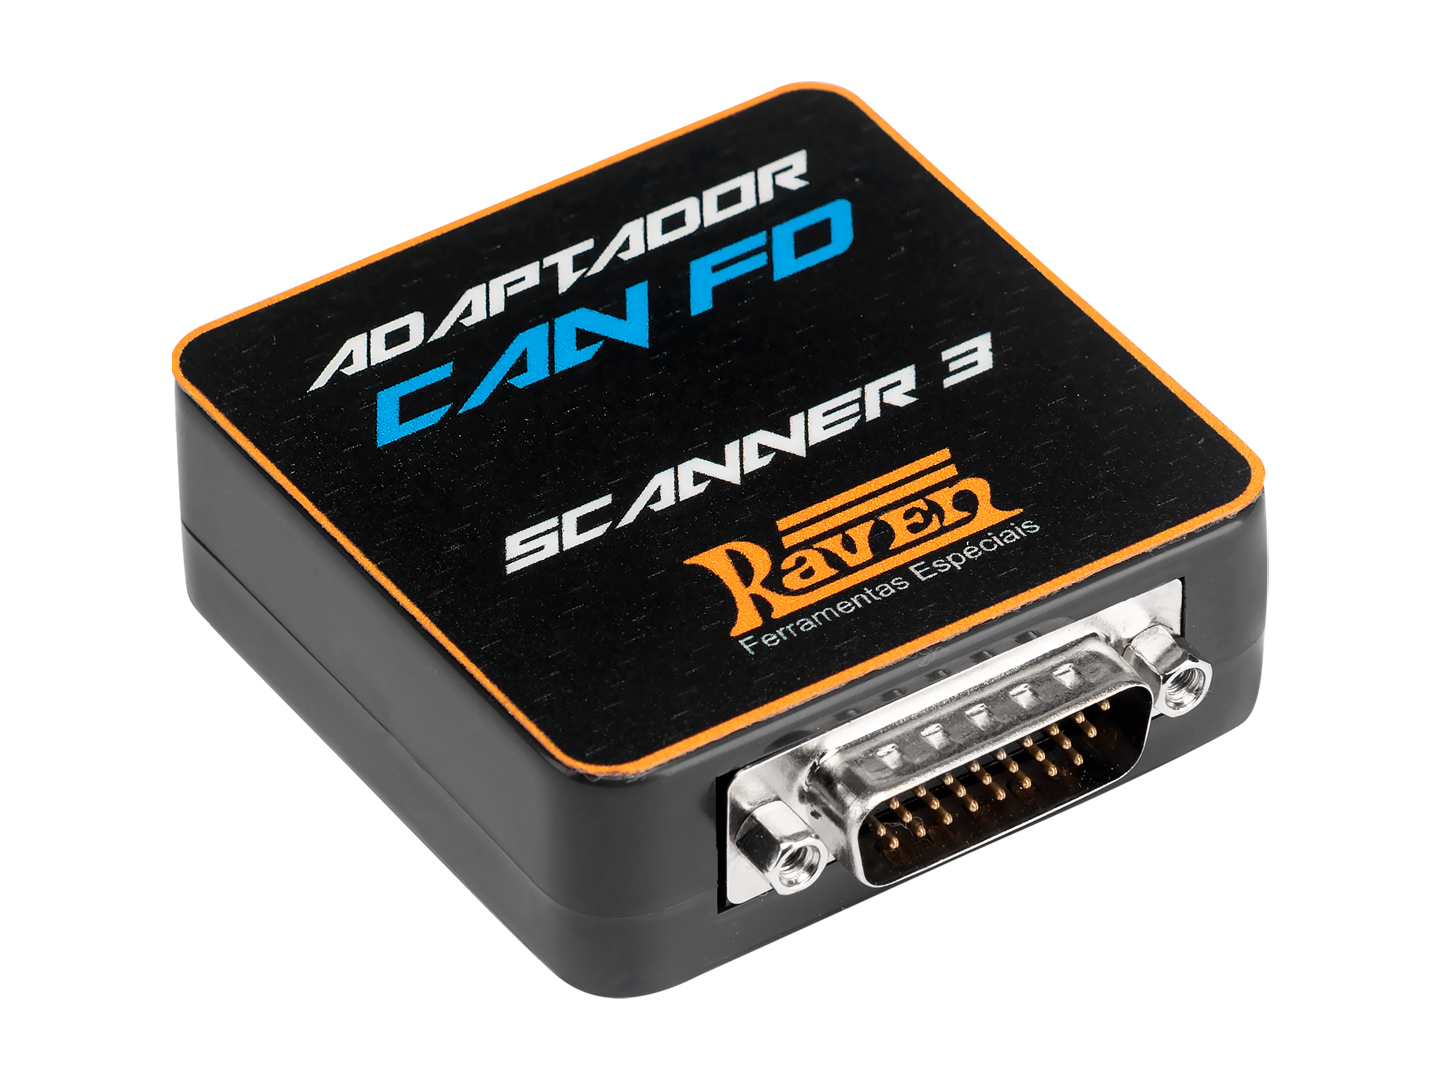 Produto Raven 108833 - Adaptador CAN FD - Adaptador para conectar o Scanner 3 1ª ger. (108800 / 801 / 850 / 851 / 900 / 901) aos veículos equipados com o protocolo de comunicação de alta velocidade CAN FD (ex.: GM Onix 2ª ger. (19>) e Tracker 3ª ger. (20>)). Para converter o Scanner 3 1ª ger. no Scanner 3 PRO, que se conecta aos veículos com protocolos CAN FD e DoIP sem a necessidade de adaptador, além de possuir maior capacidade e velocidade de processamento, confira as opções de upgrade disponíveis.<ul></ul> - Elétrica